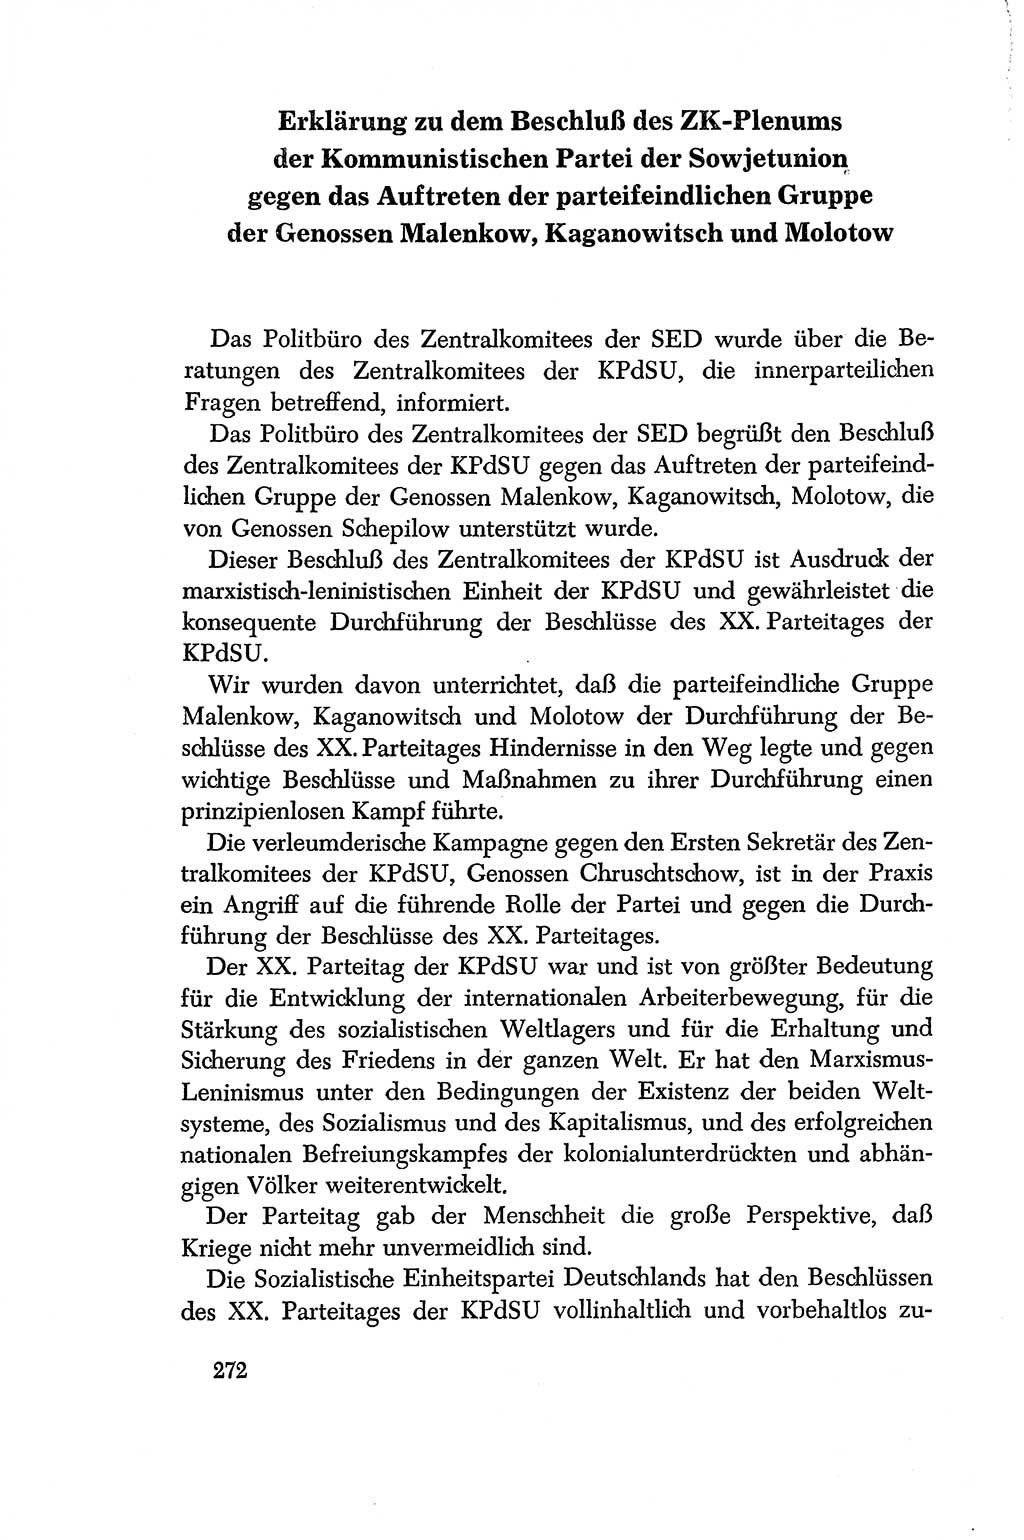 Dokumente der Sozialistischen Einheitspartei Deutschlands (SED) [Deutsche Demokratische Republik (DDR)] 1956-1957, Seite 272 (Dok. SED DDR 1956-1957, S. 272)